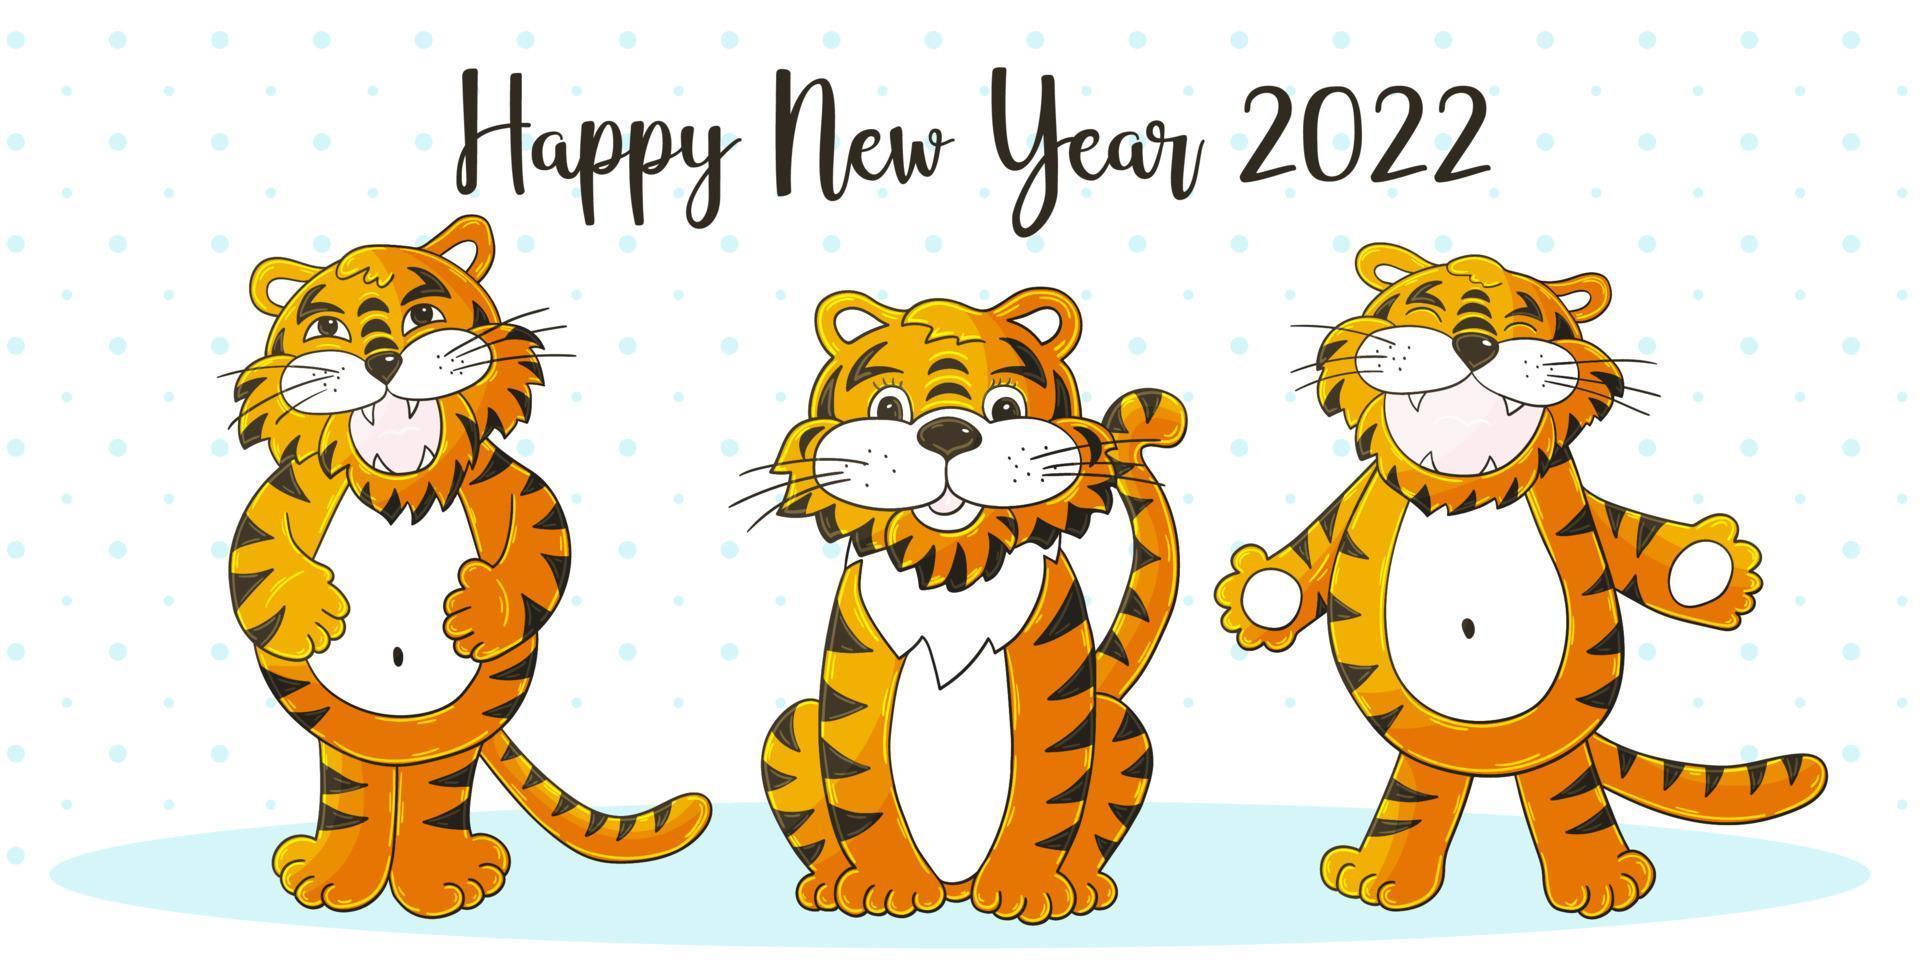 ano novo 2022. ilustração de desenhos animados para cartões postais, calendários, pôsteres vetor